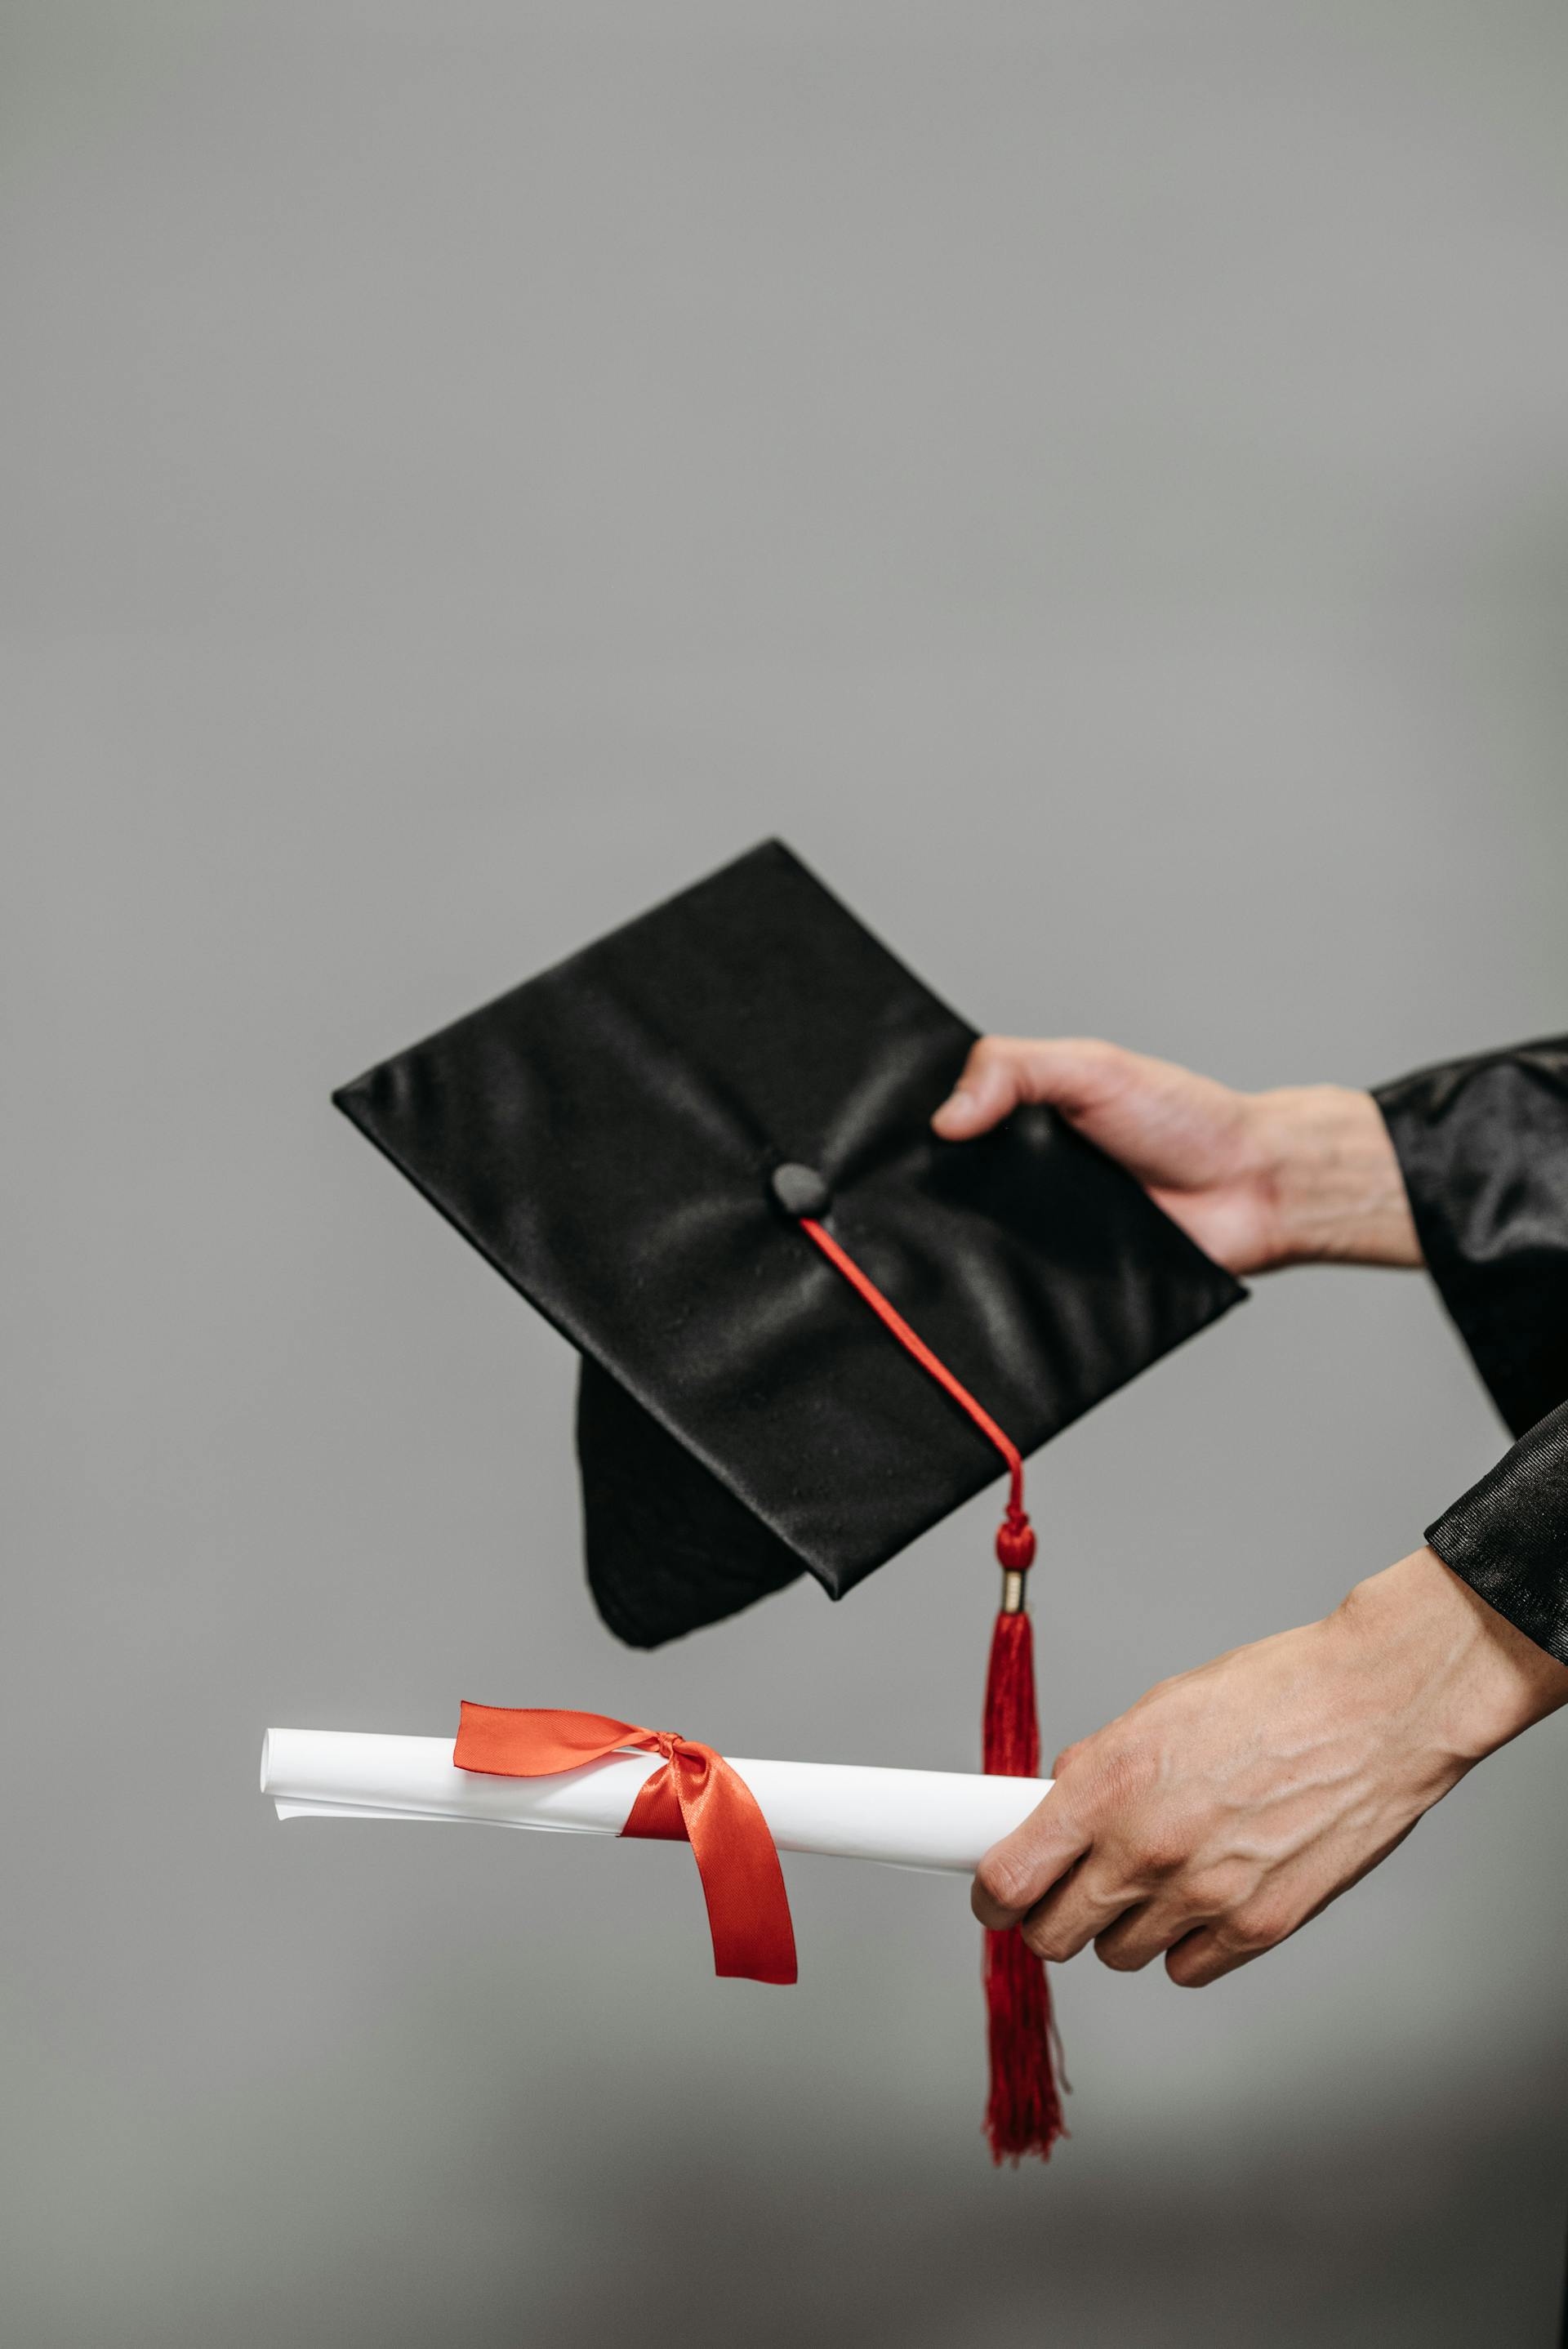 A graduation cap and degree | Source: Pexels